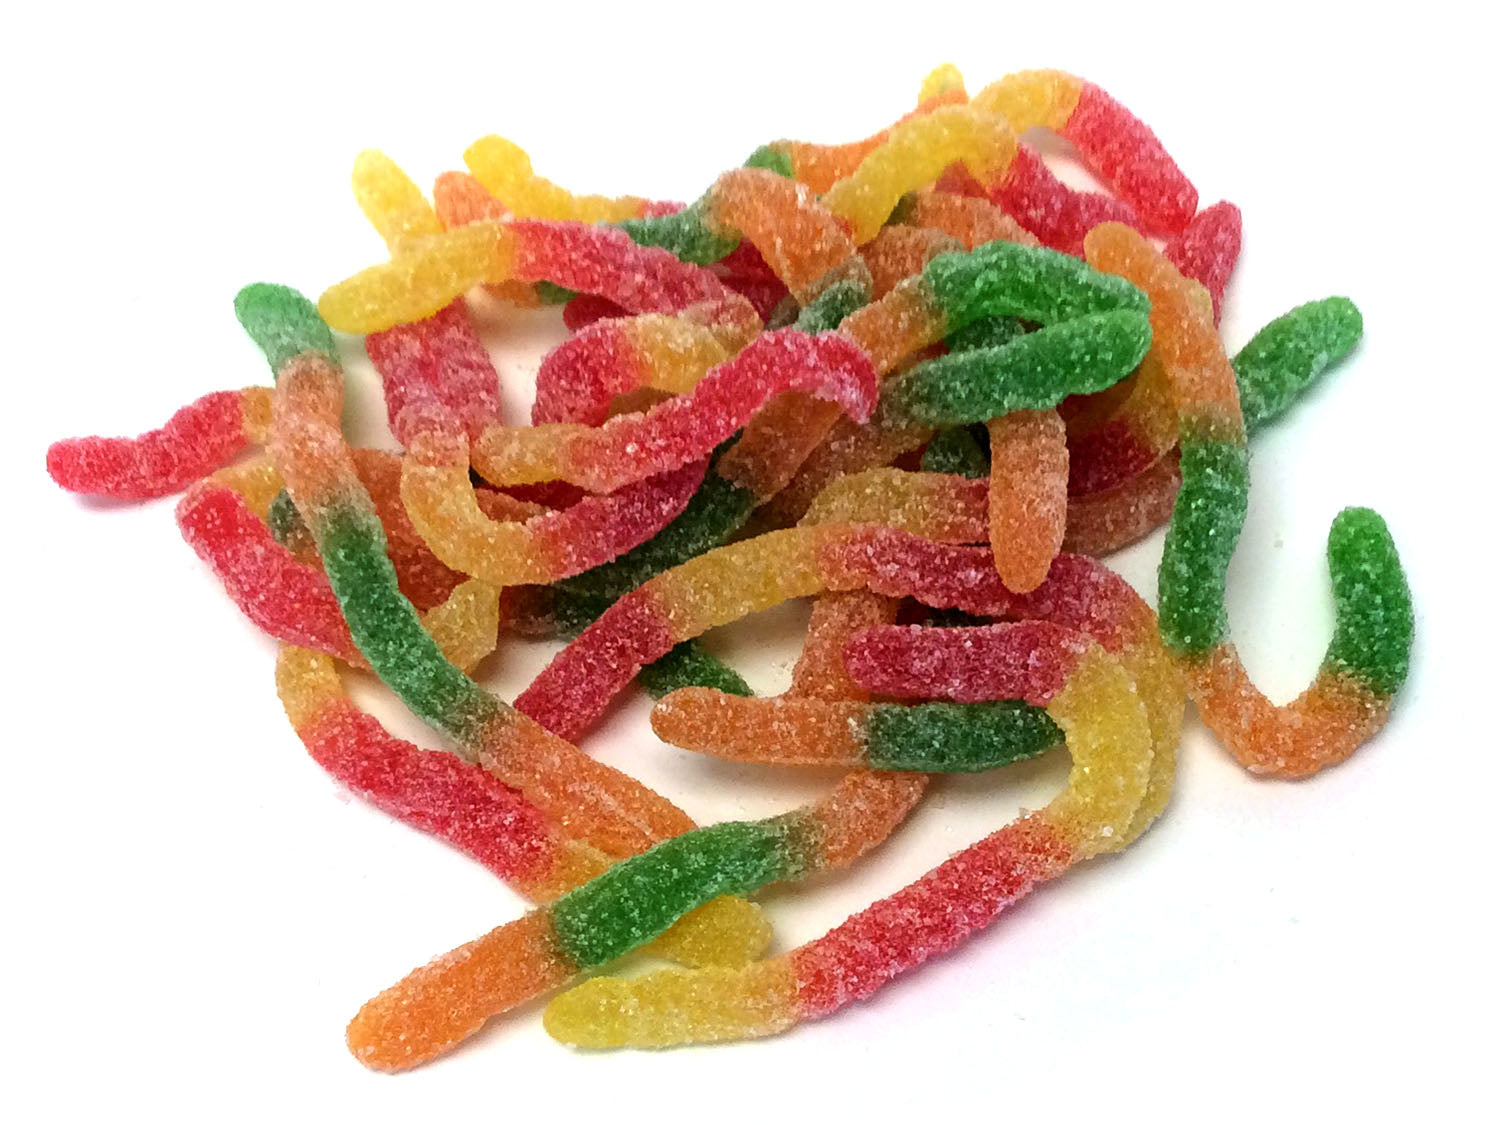 Gummi Sour Worms - Bulk 3 lb bag